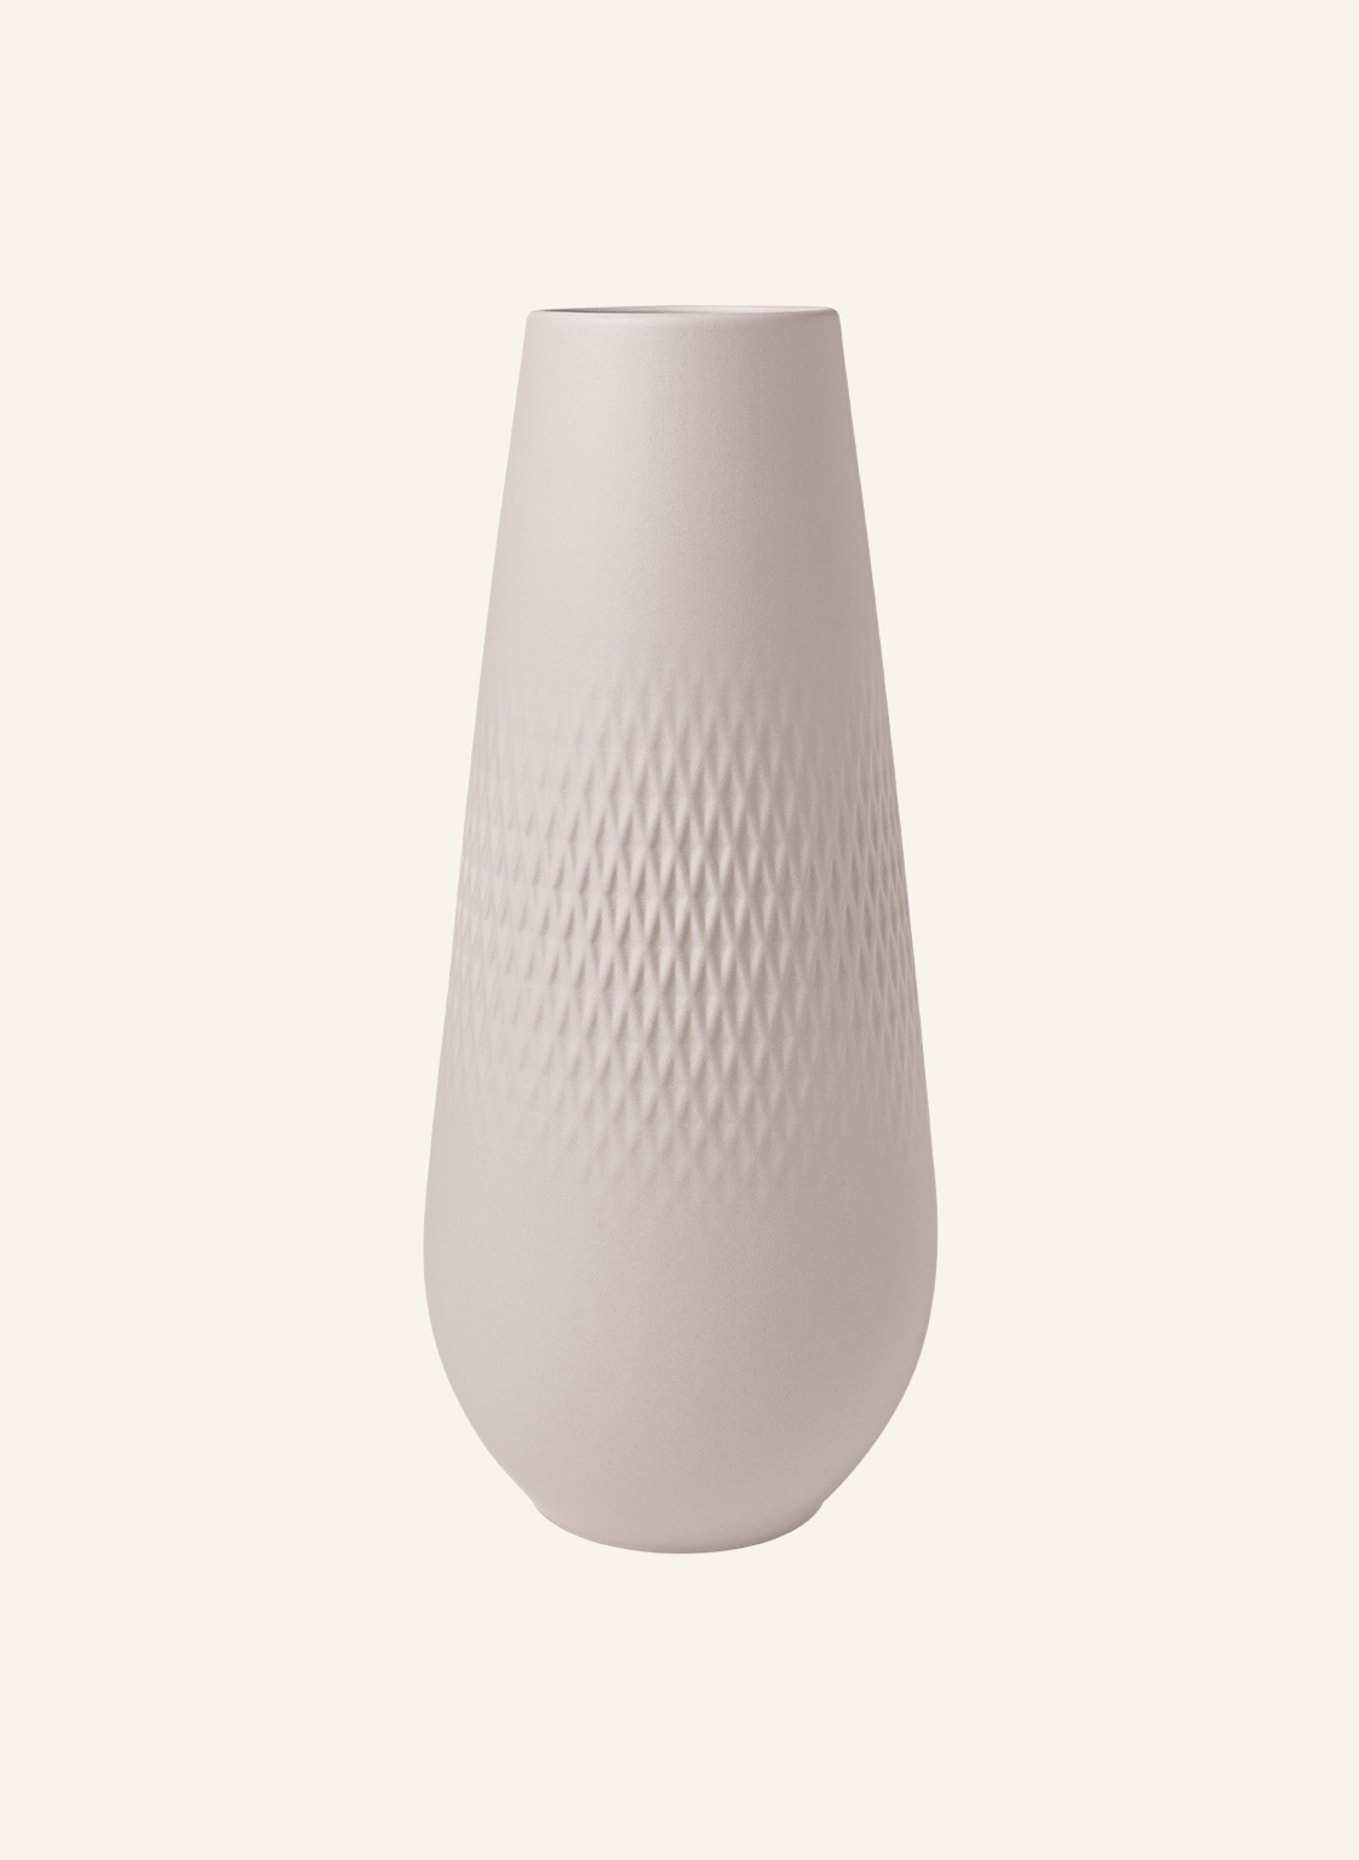 Villeroy & Boch Vase MANUFACTURE COLLIER BEIGE, Farbe: BEIGE (Bild 1)